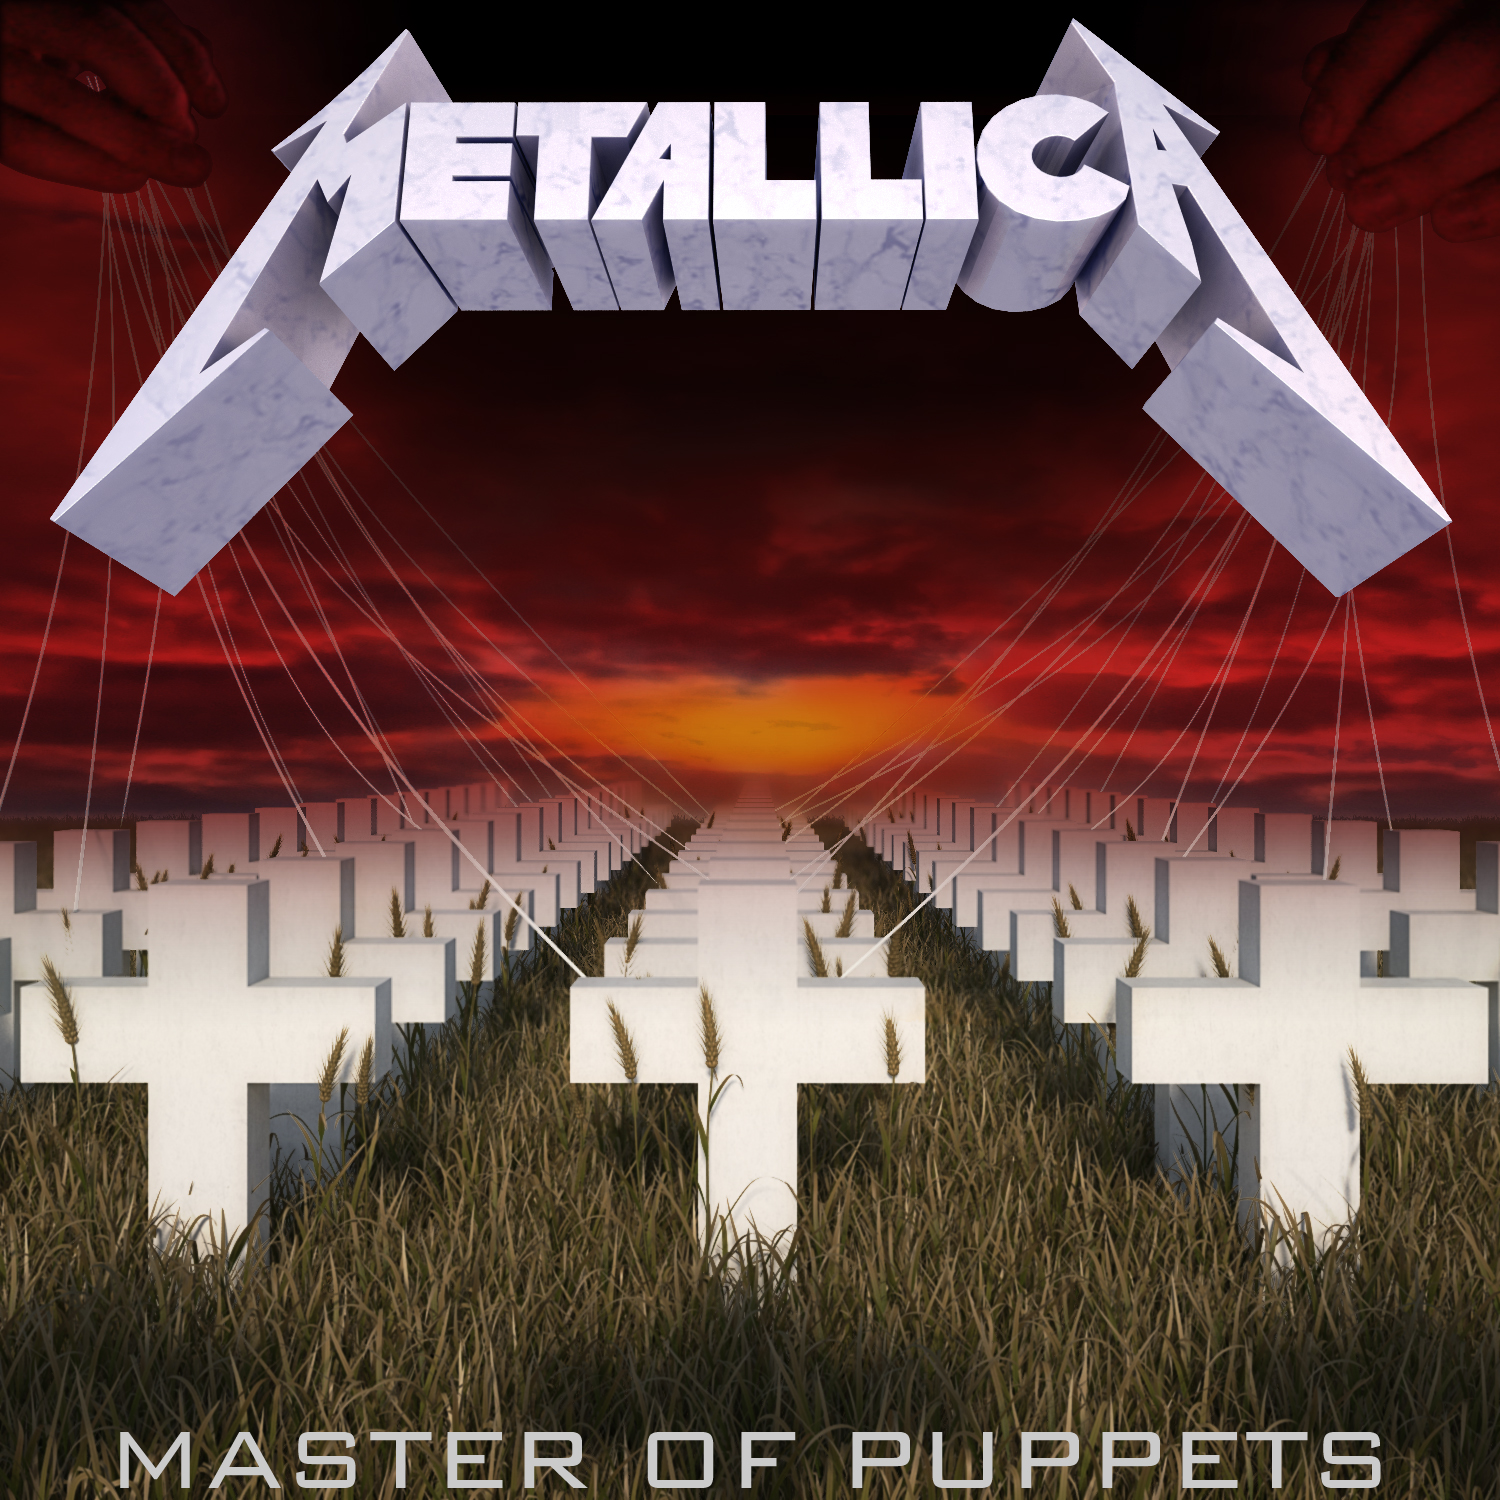 Metallica nos dice por qué Master of puppets es tan importante